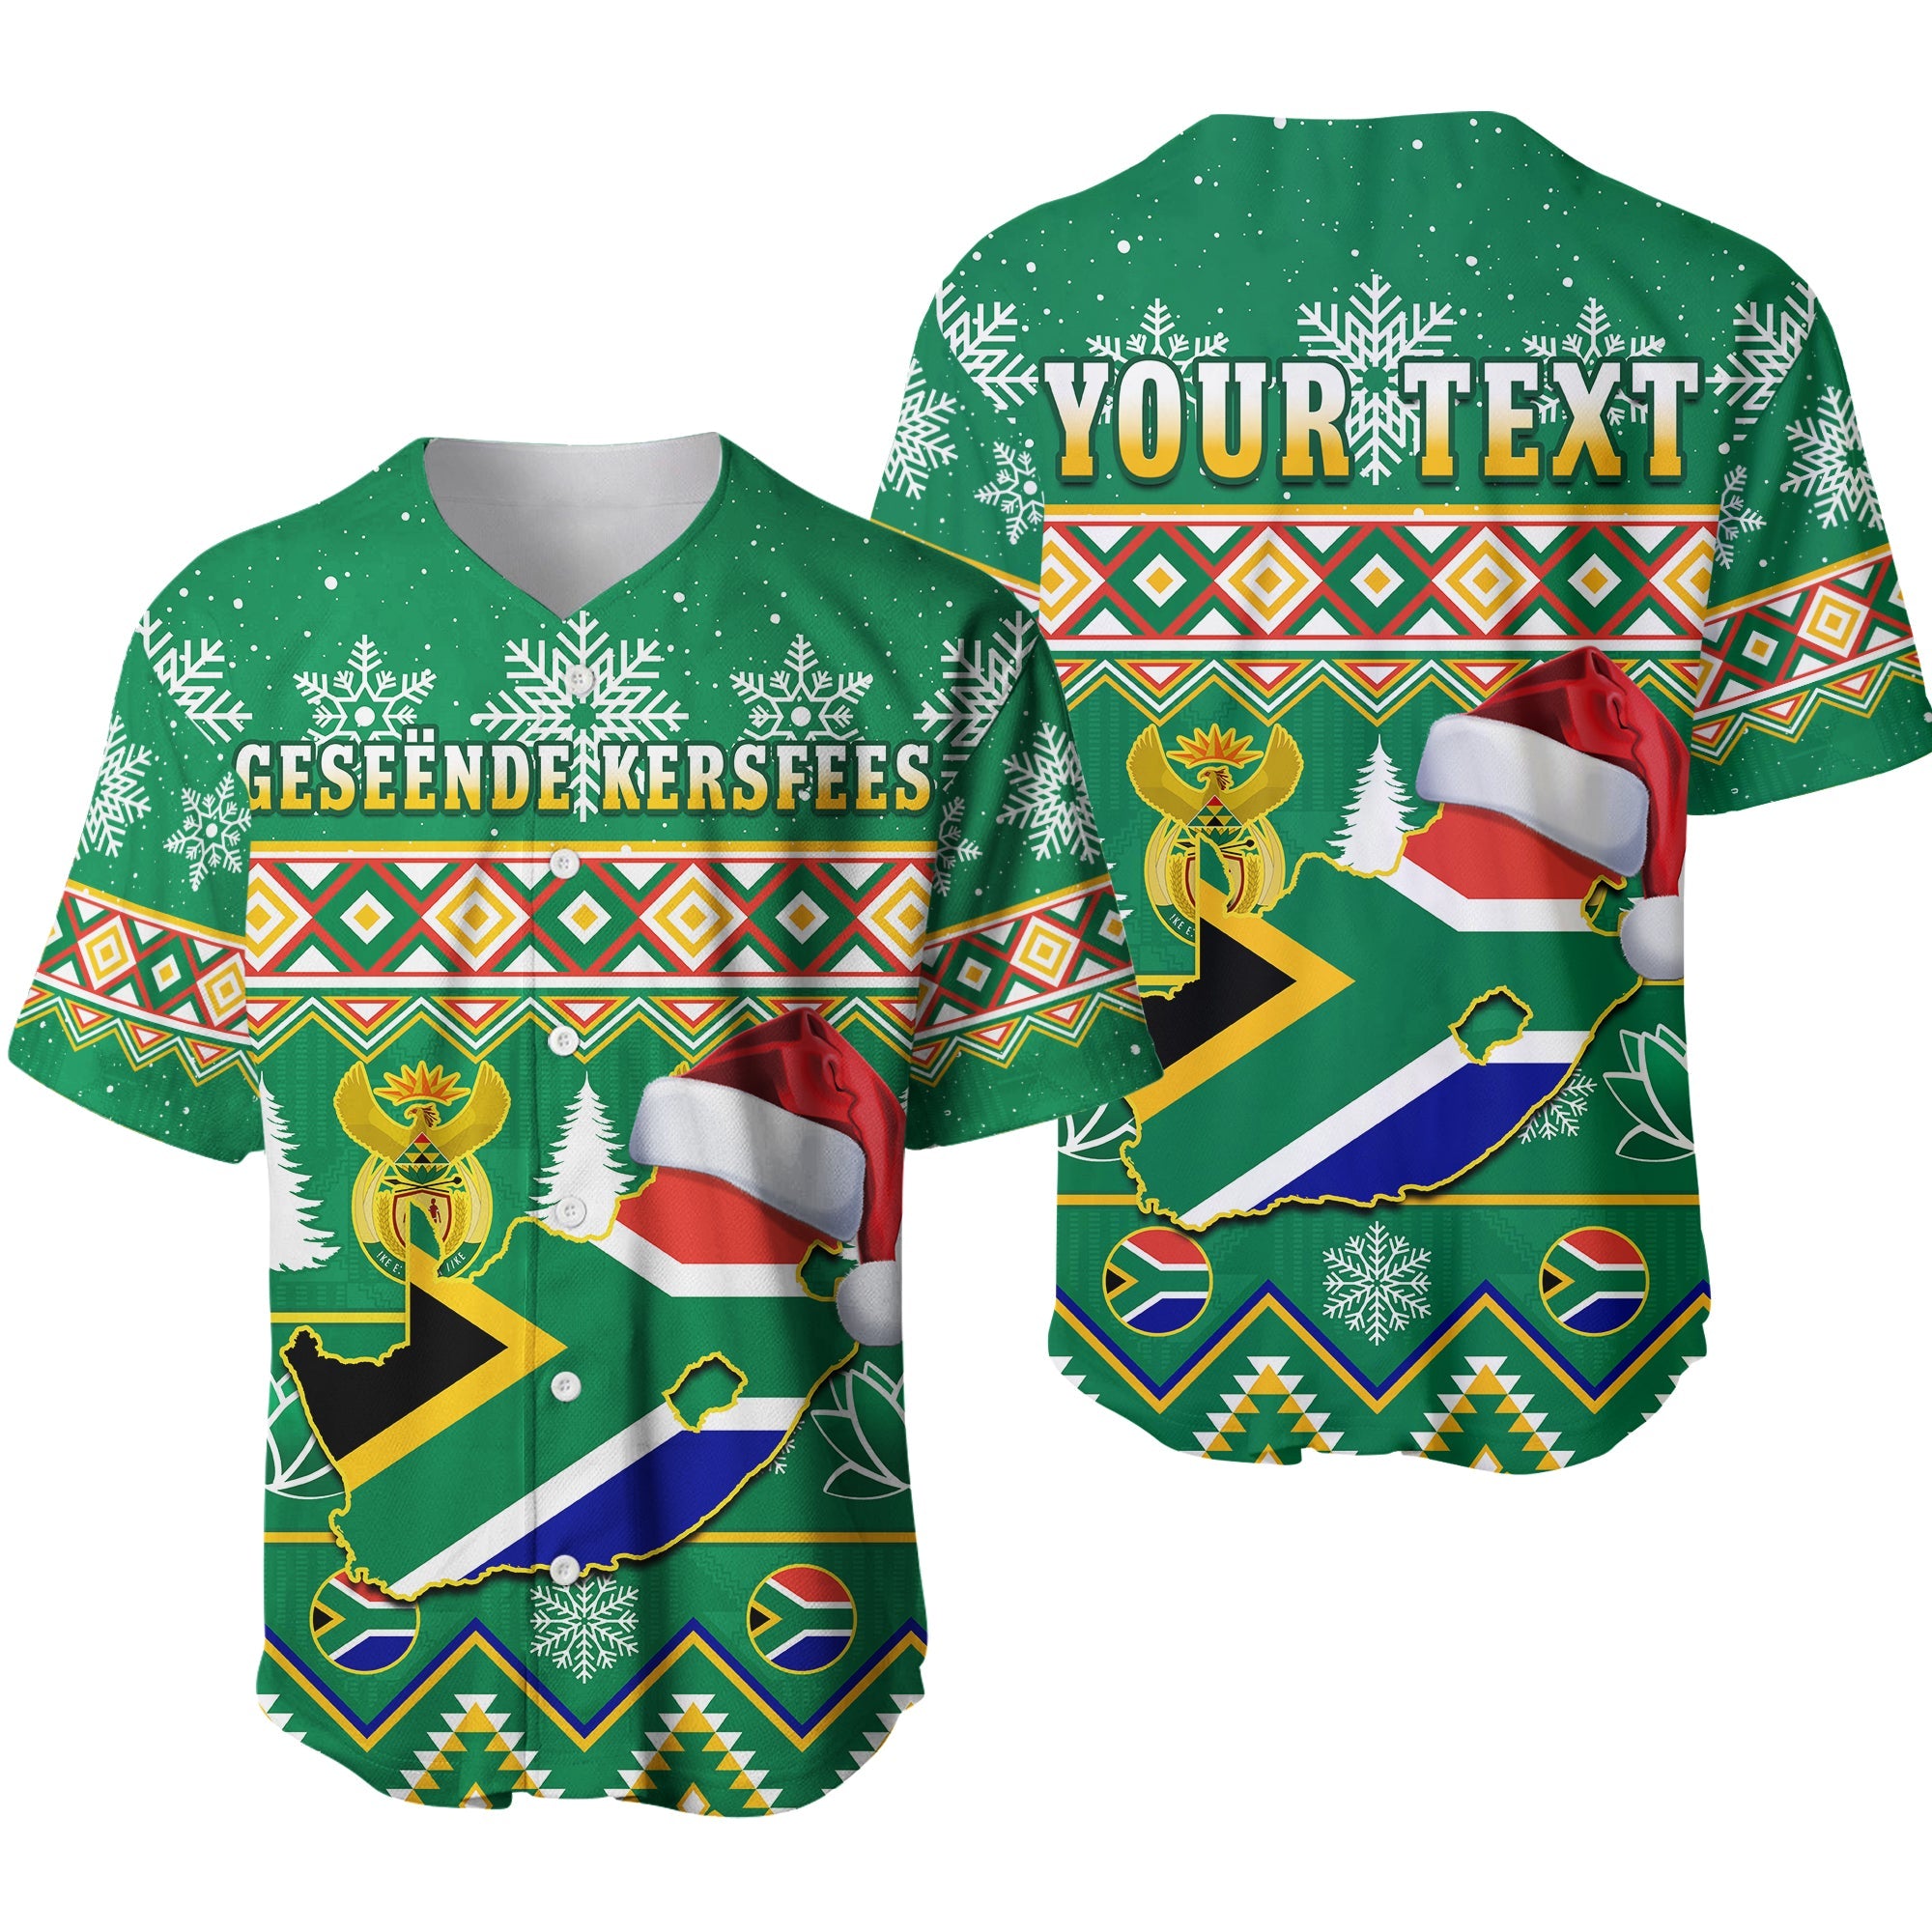 custom-personalised-south-africa-christmas-baseball-jersey-king-protea-geseende-kersfees